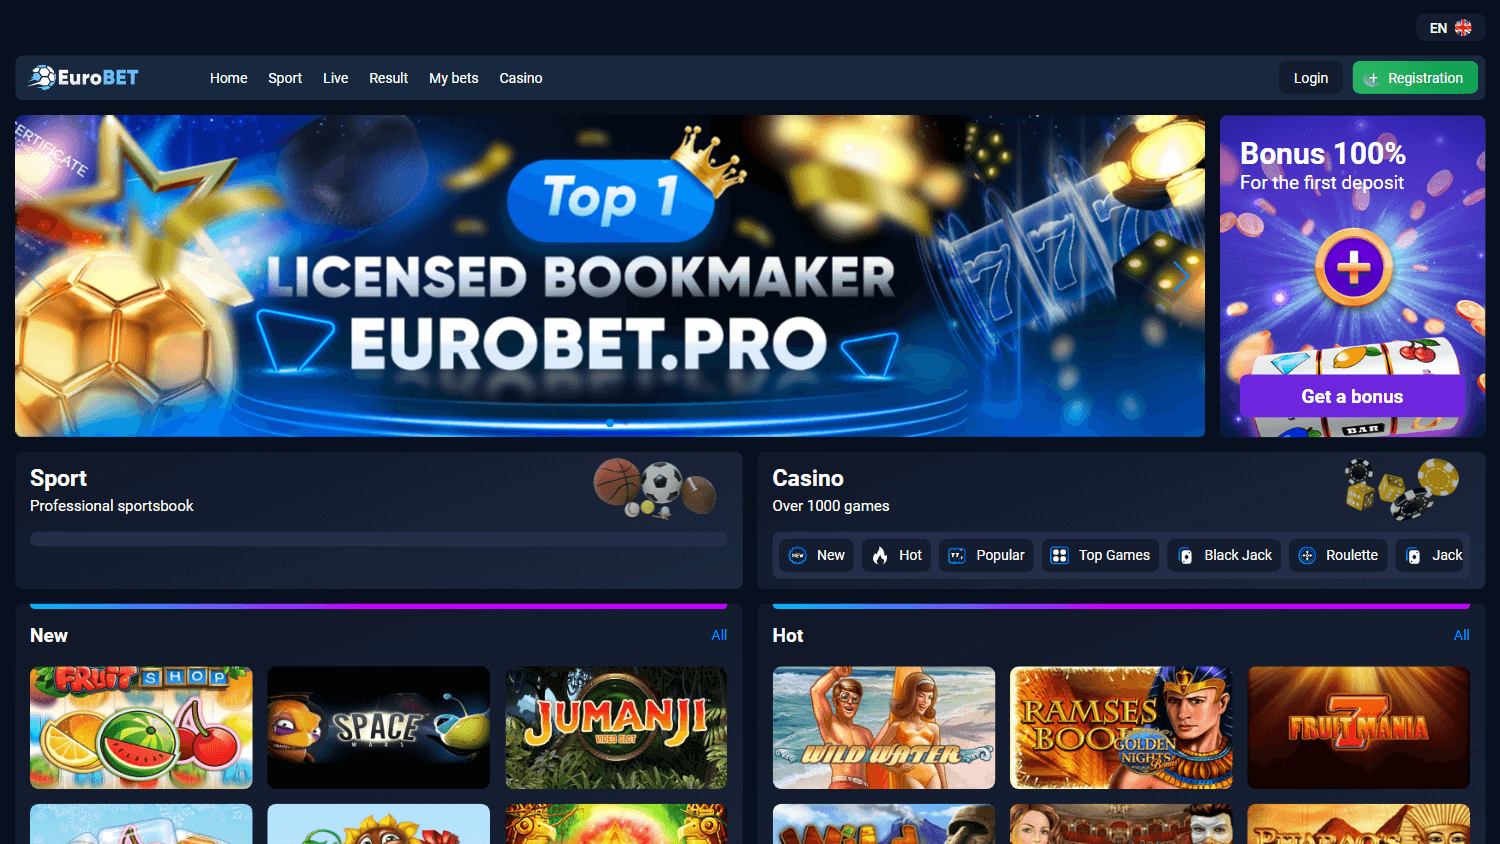 eurobet.pro_casino_homepage_desktop